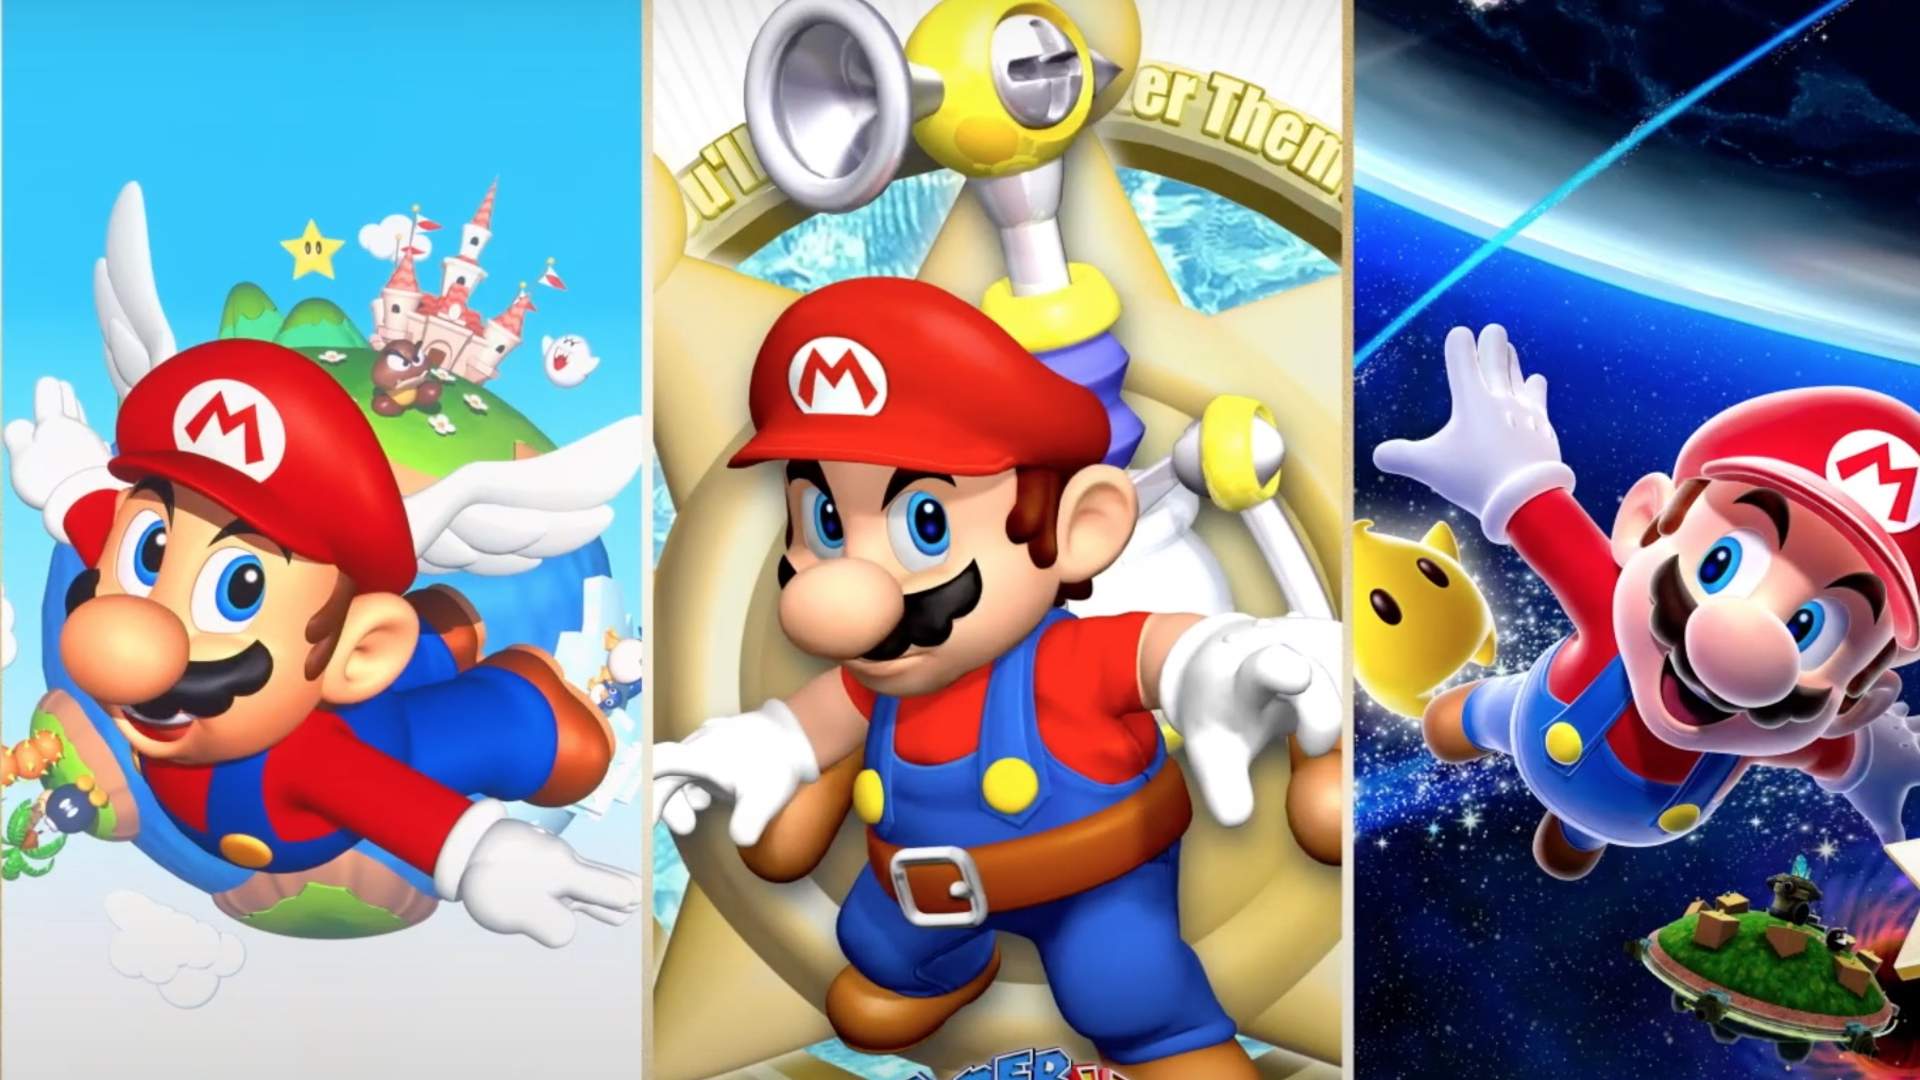 Được thiết kế để tôn vinh huyền thoại Super Mario, sản phẩm Super Mario 3D All-Stars sẽ mang đến cho bạn cơ hội tái khám phá những giai điệu, kỷ niệm và trải nghiệm vô cùng tuyệt vời của huyền thoại trò chơi này. Hãy bắt đầu cuộc phiêu lưu chưa từng có này ngay hôm nay!